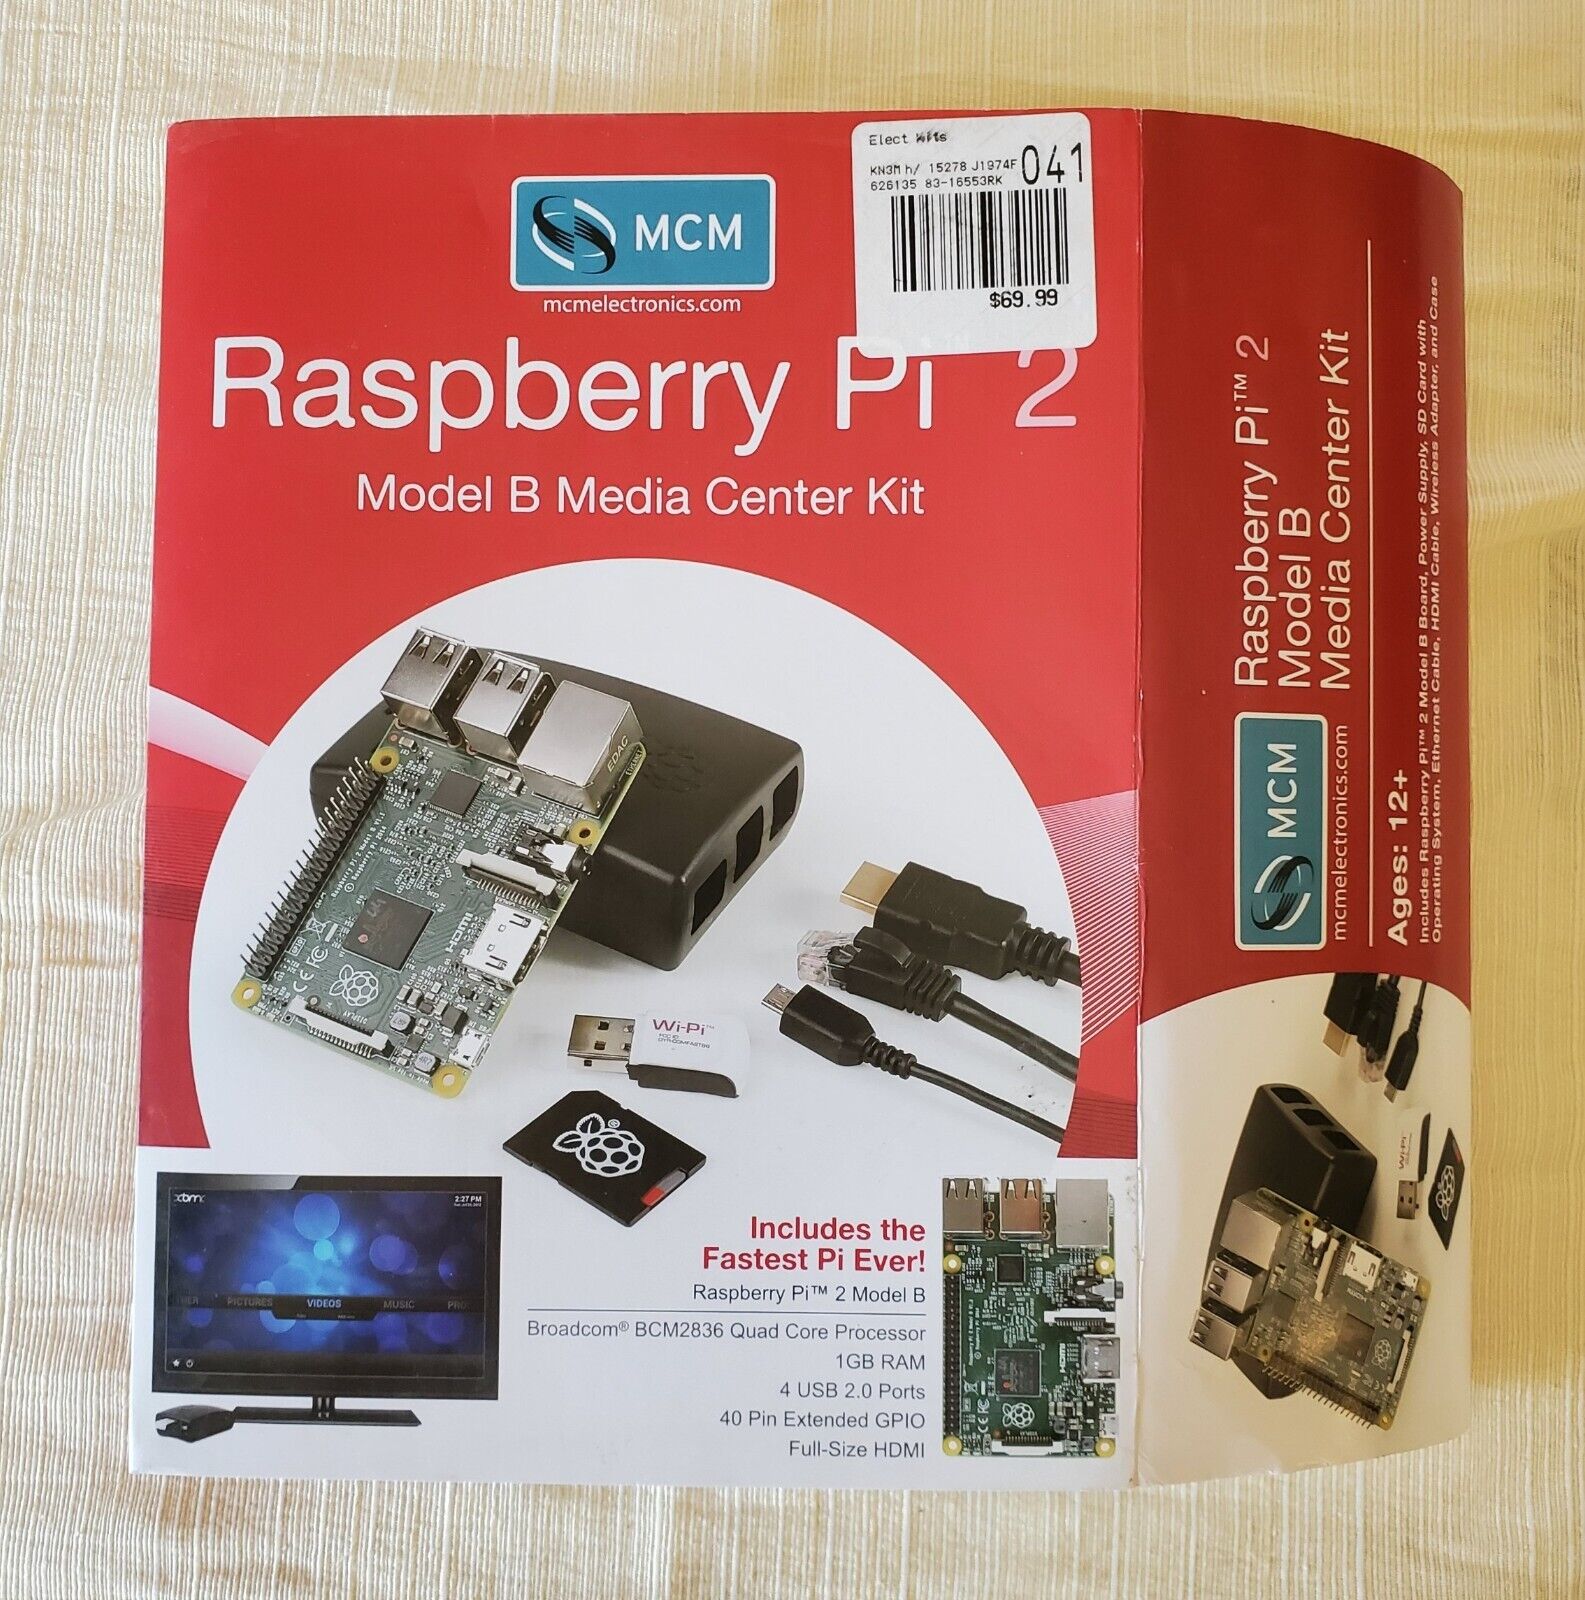 Raspberry Pi 2 Model B Media Center Kit New in Box. Original packaging 